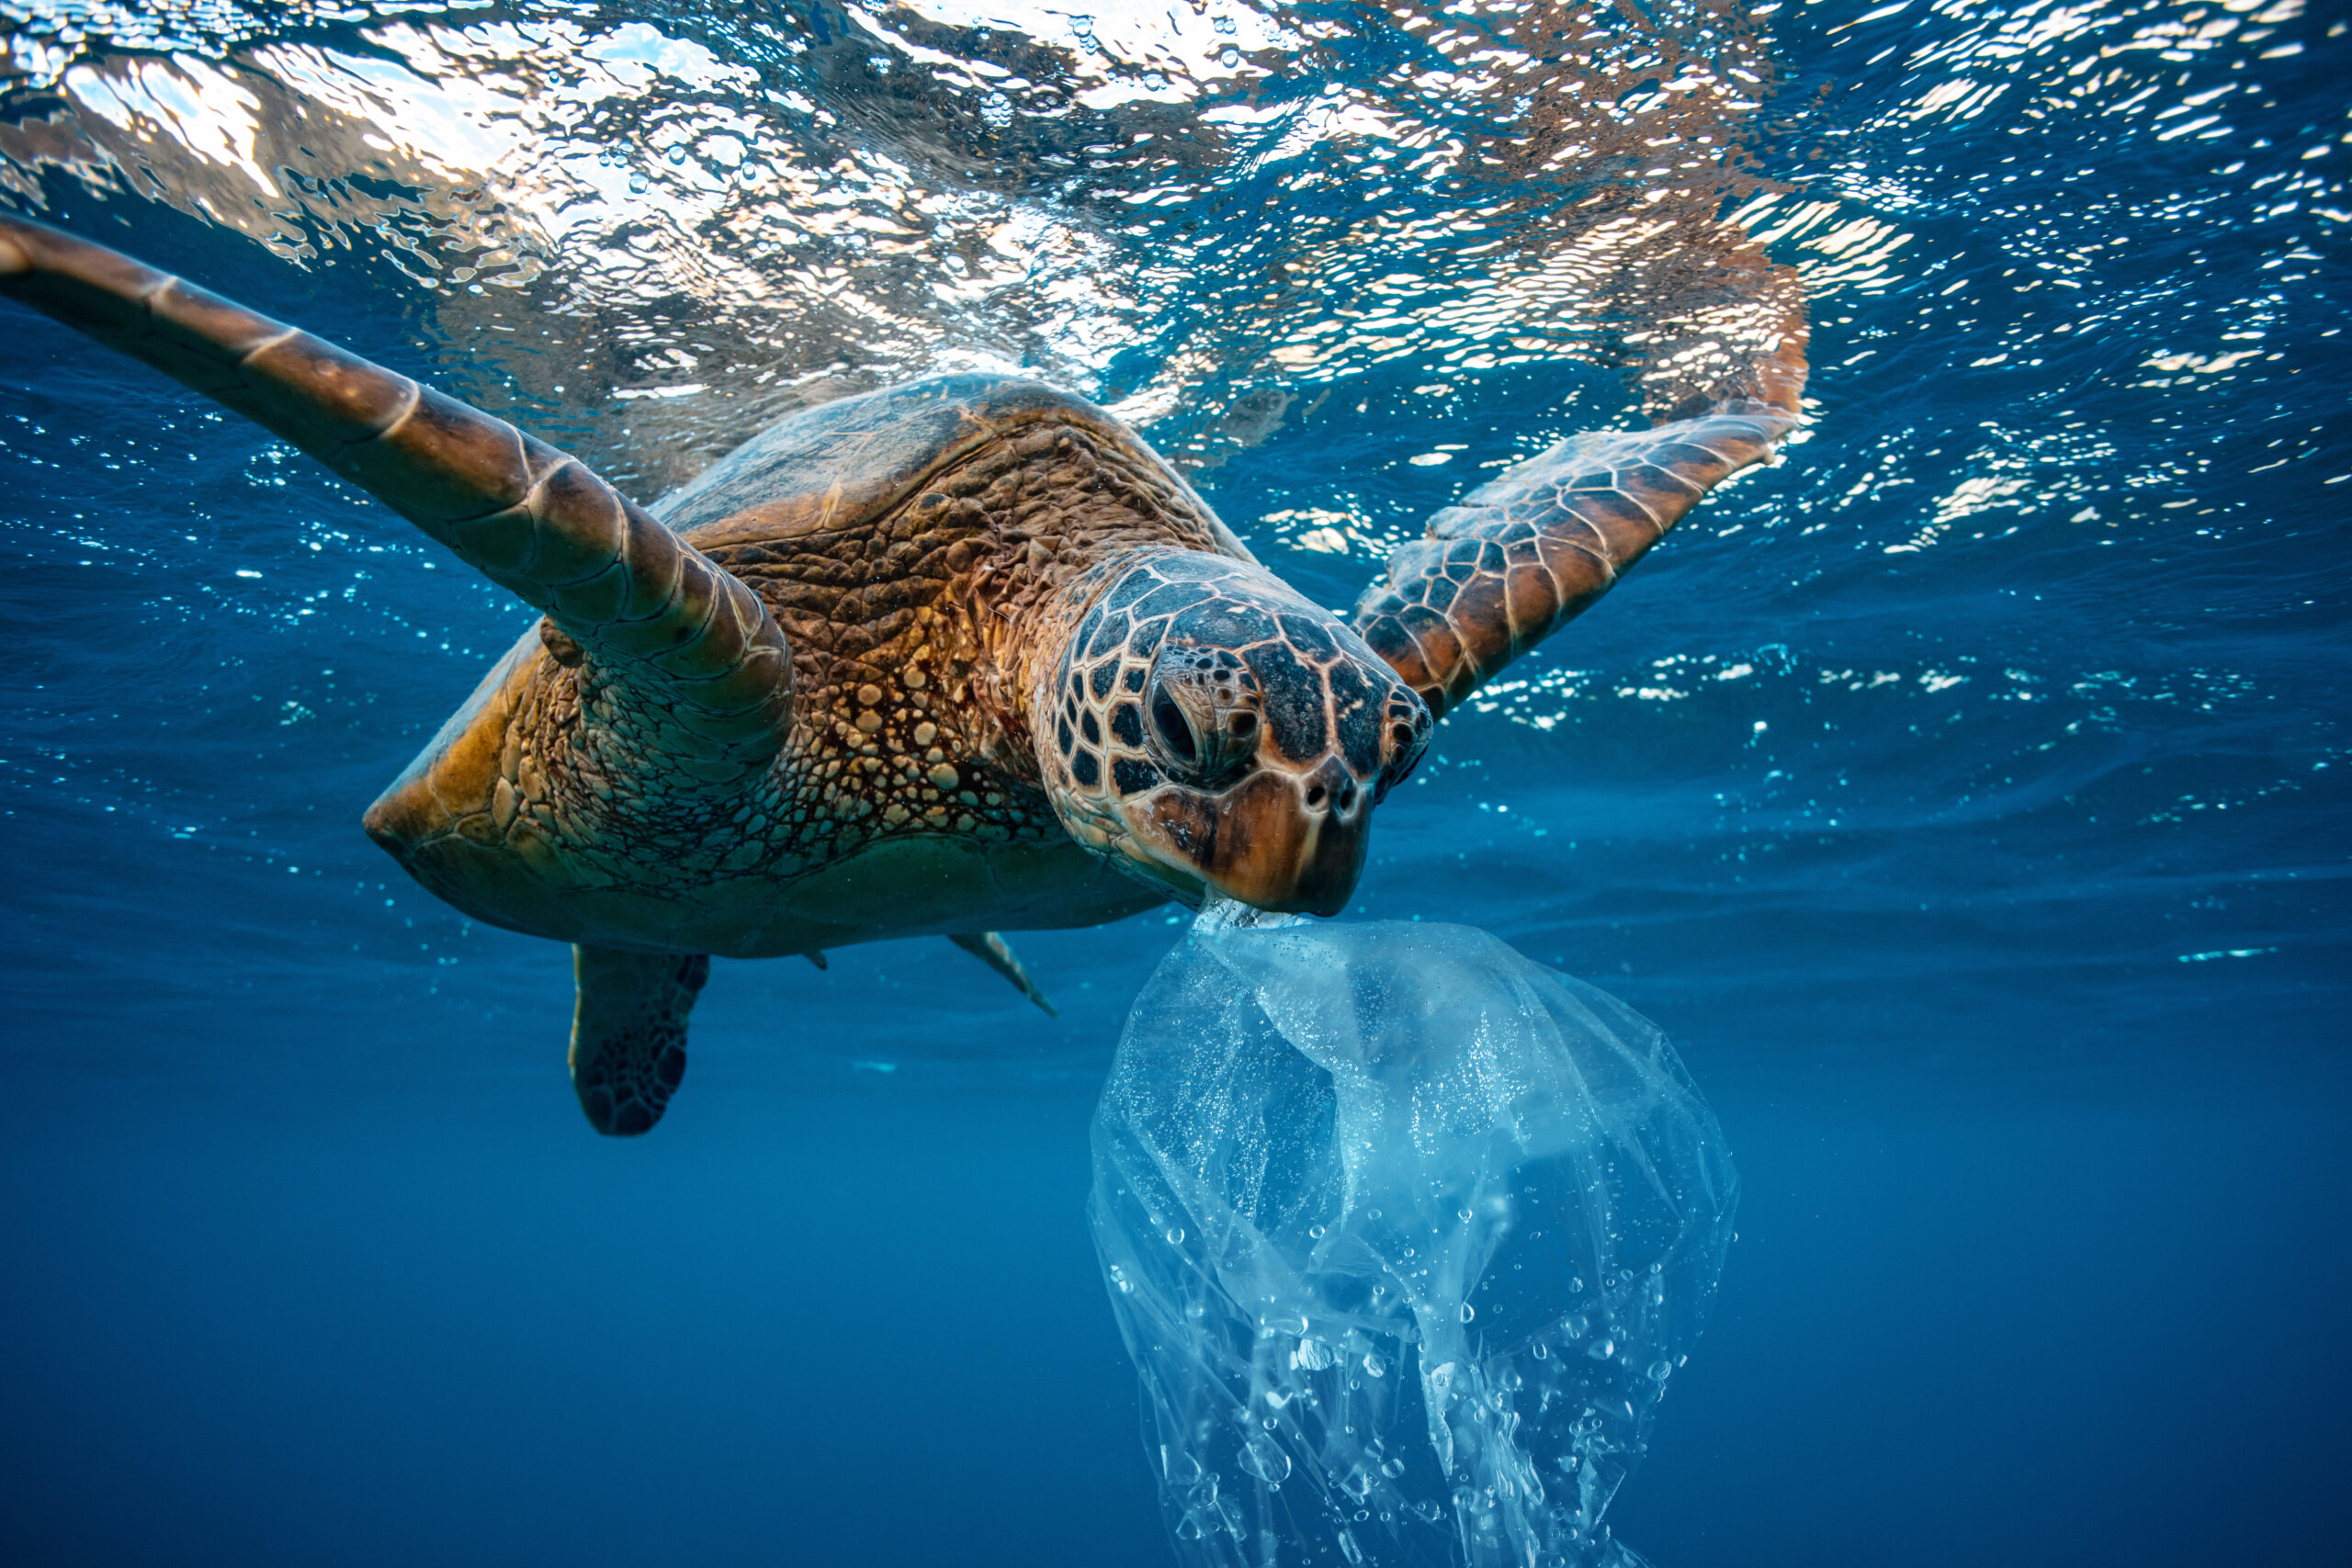 Sea turtle eating plastic bag